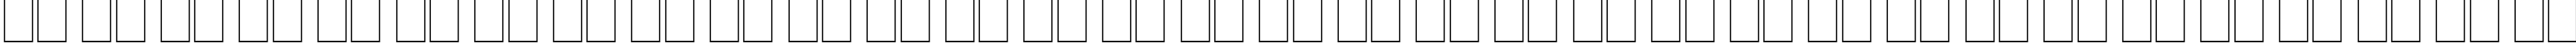 Пример написания русского алфавита шрифтом Gentium Basic